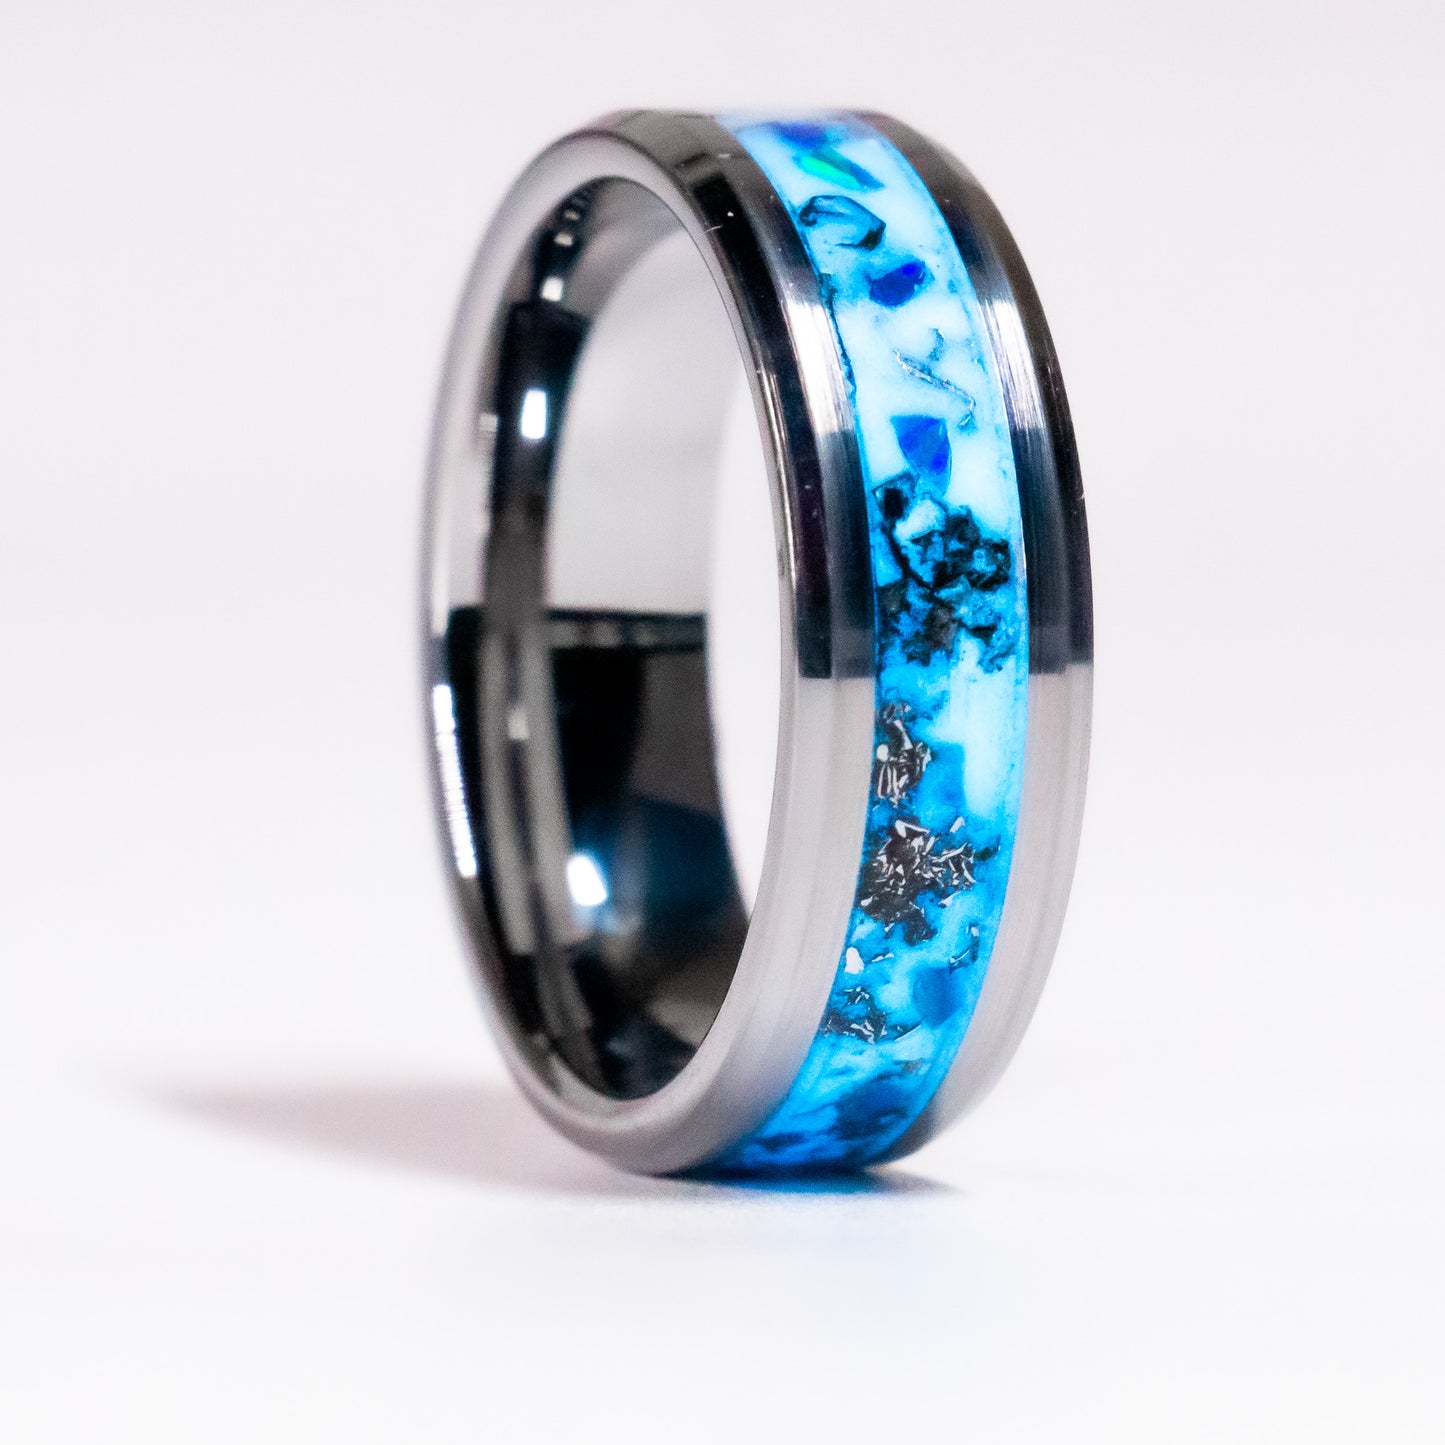 Reverie - Meteorite, Blue Opal in Tungsten